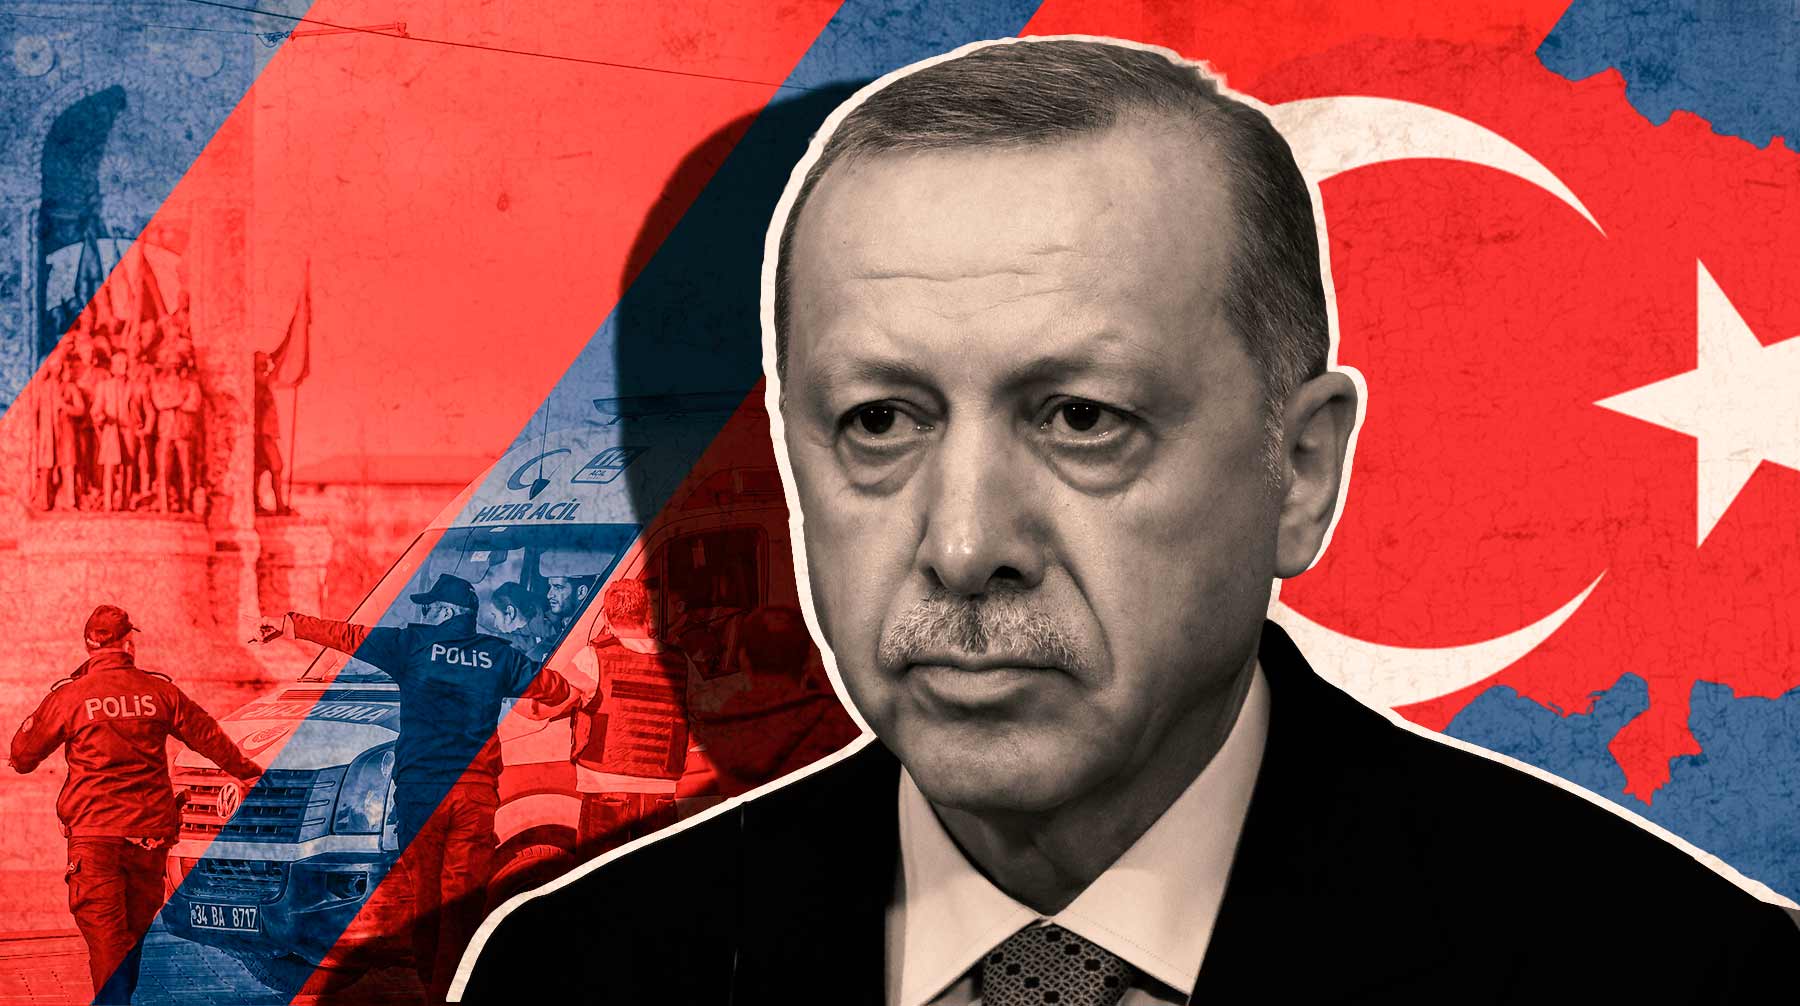 Теракт в Стамбуле. Какую выгоду может извлечь для себя Эрдоган и при чем здесь Финляндия